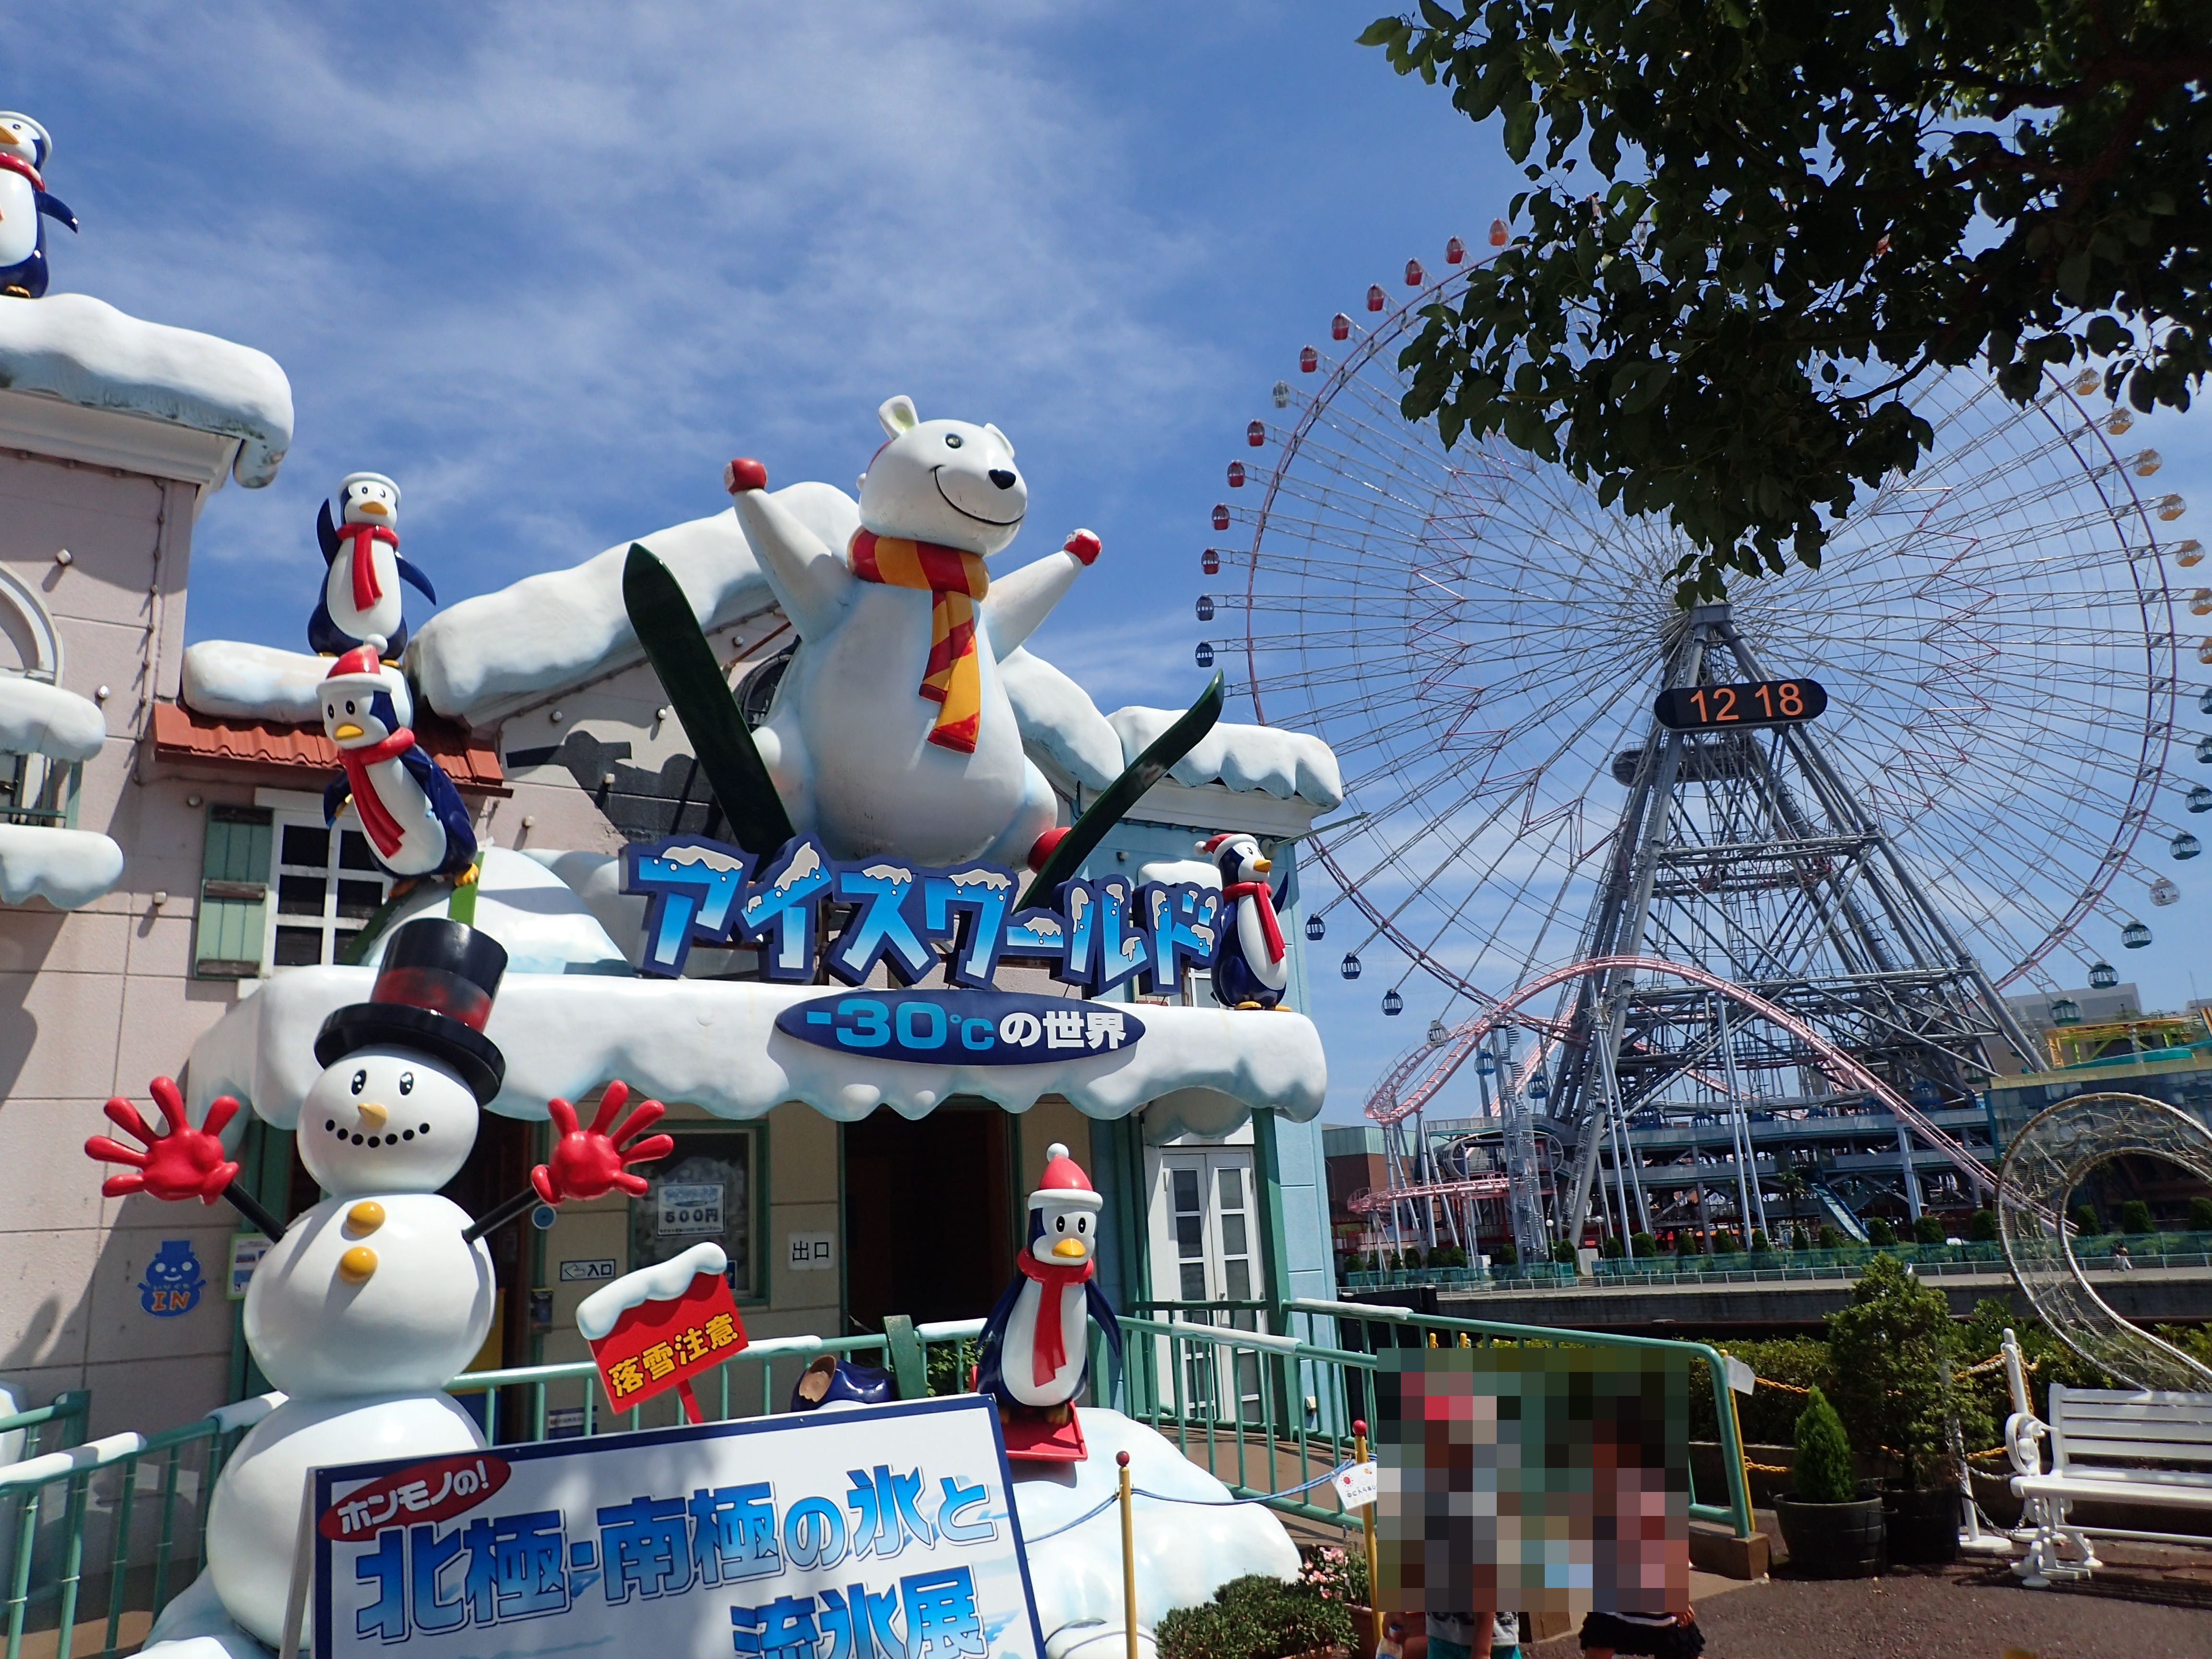 夏休み 意外と穴場な横浜コスモワールド 暑すぎてガラガラ 笑 ろうごちっくぶろぐ